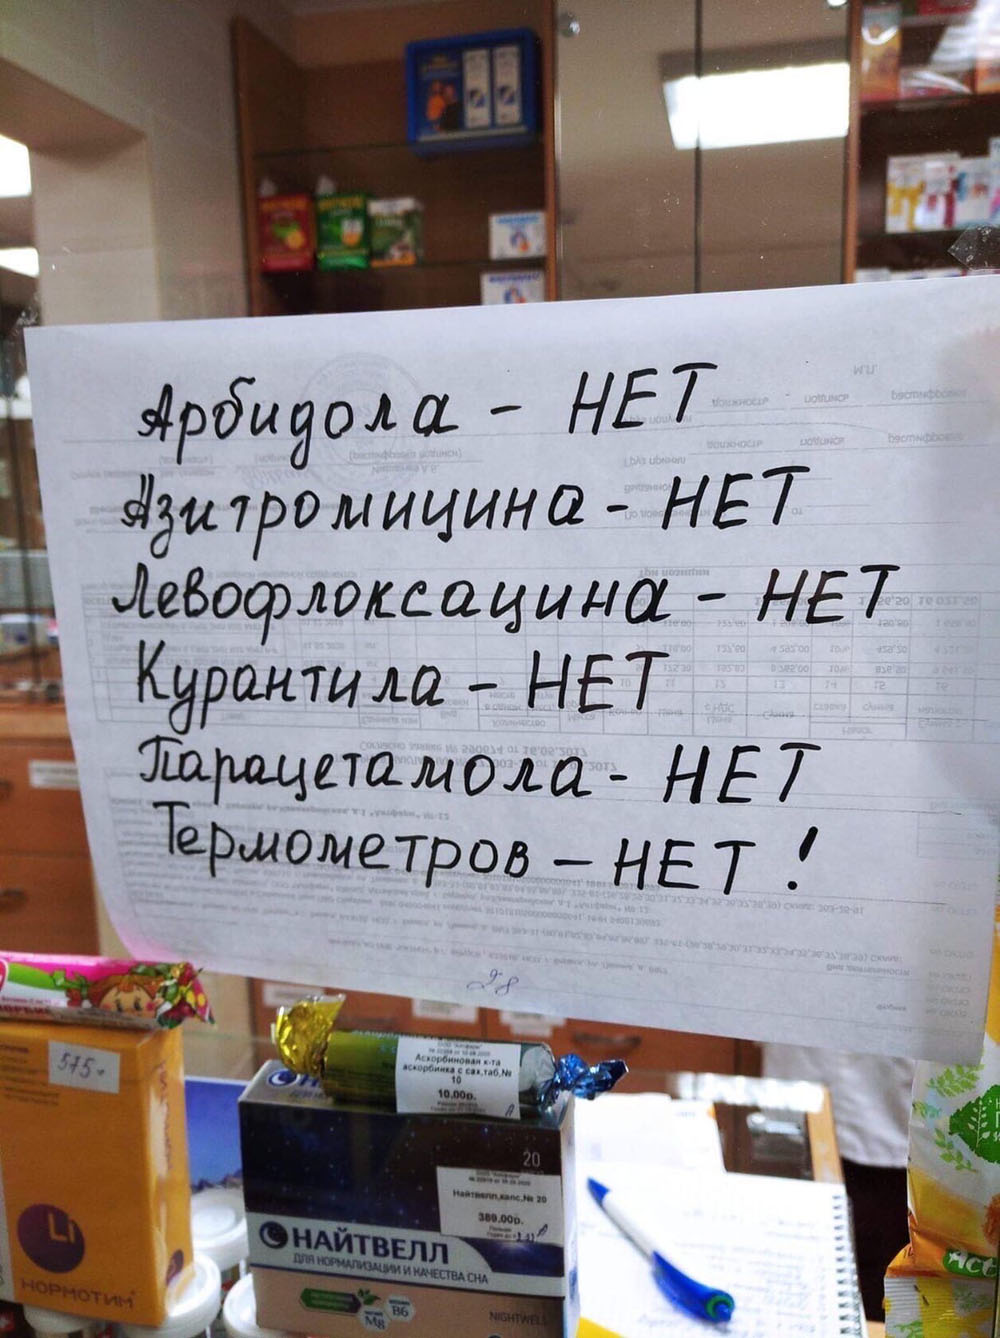 Аптеки Брянска начали вывешивать списки отсутствующих лекарств